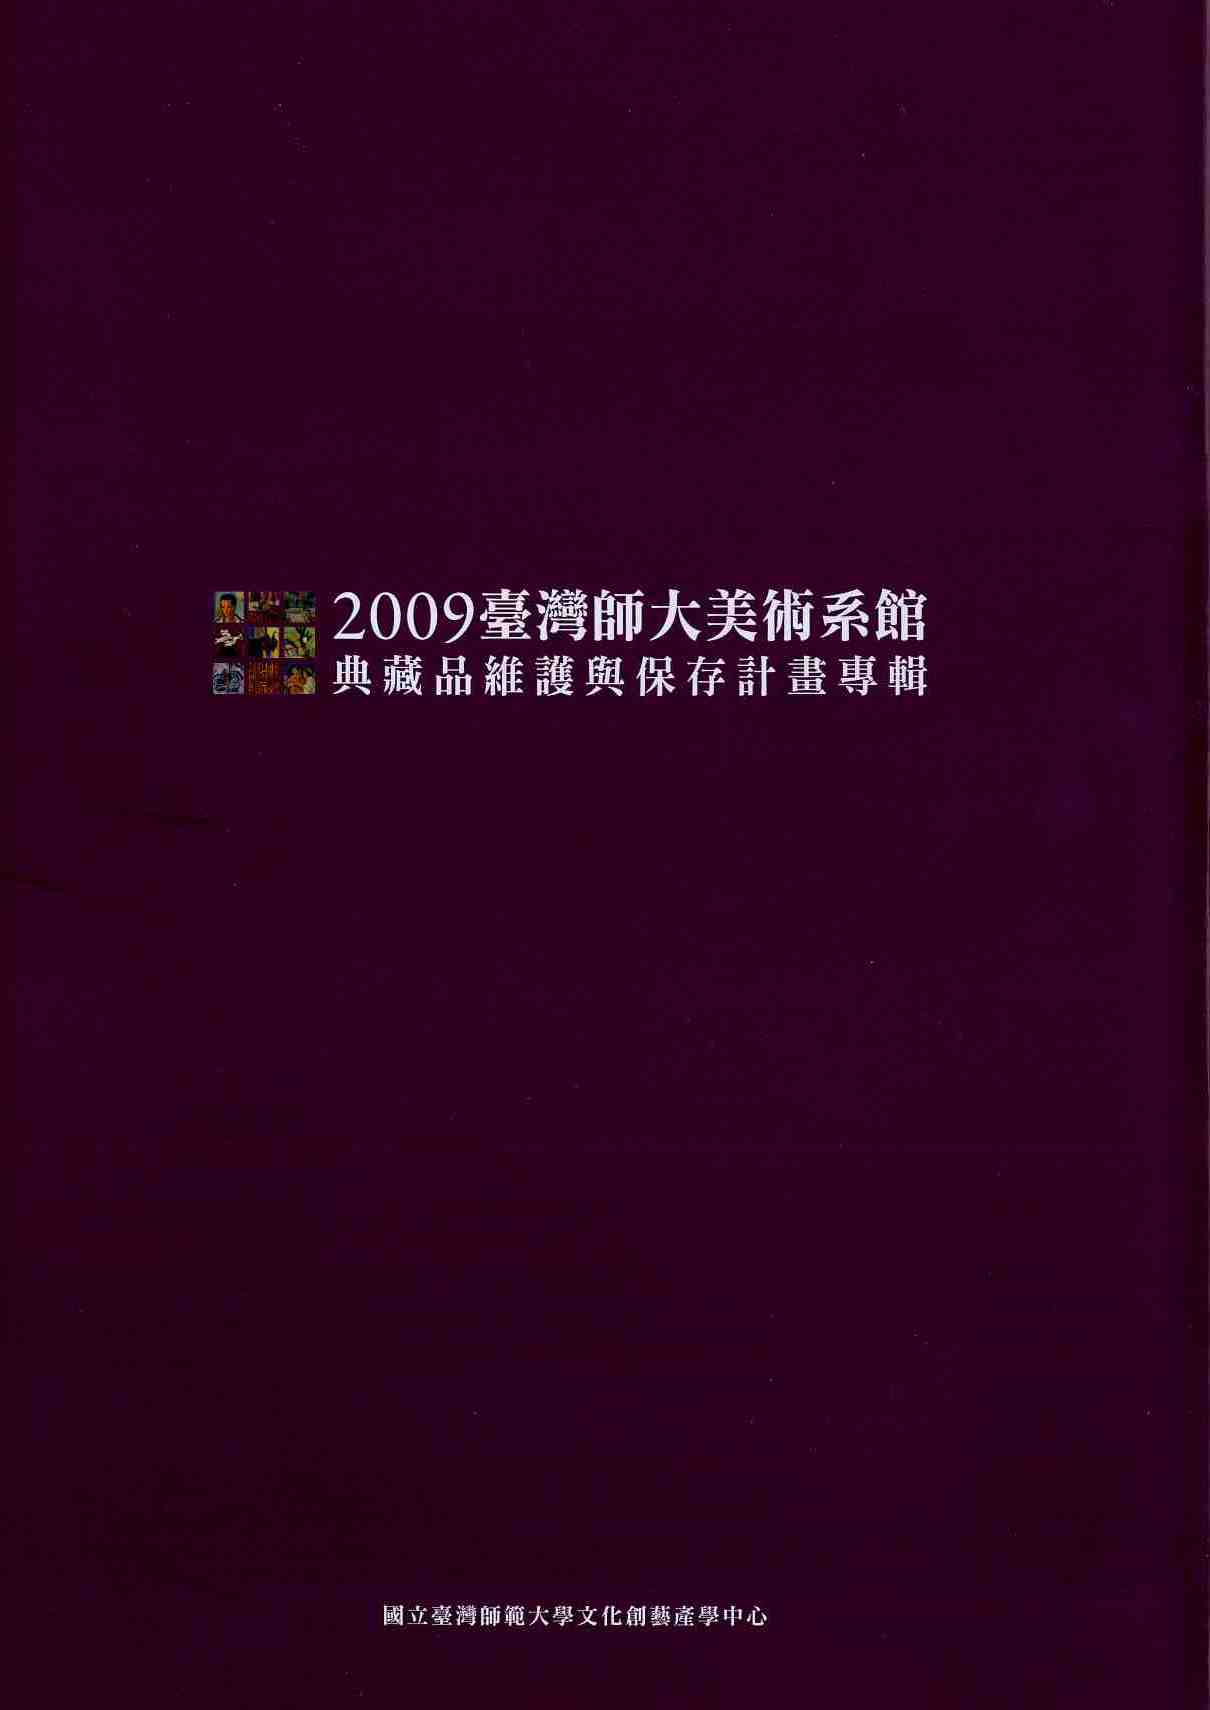 2009臺灣師大美術系館典藏品維護與保存計畫專輯